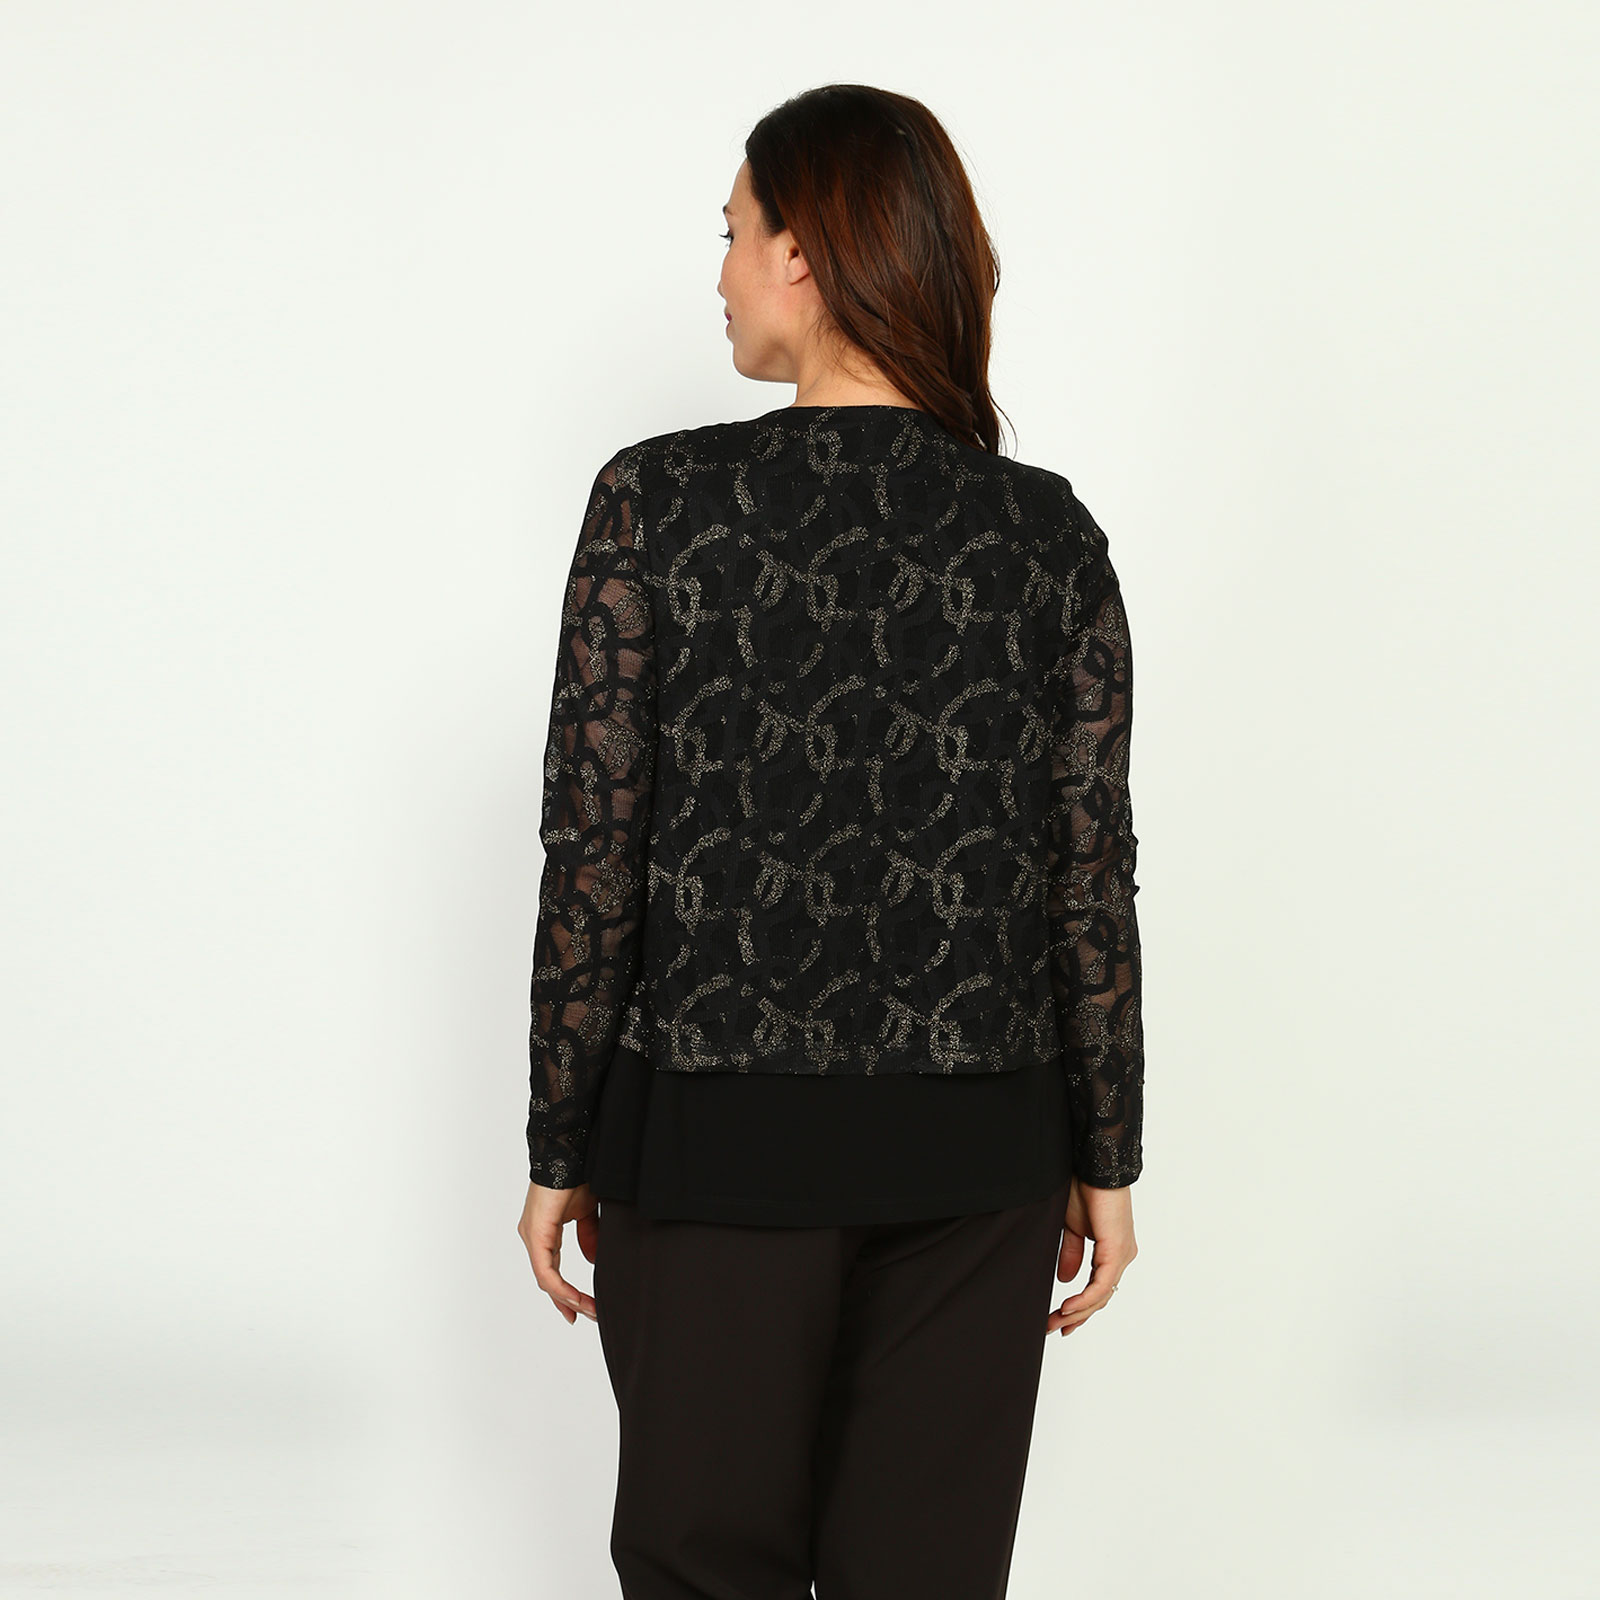 Блуза с эффектом двойки и завязками Elletto Life, размер 48, цвет черно-золотистый - фото 8